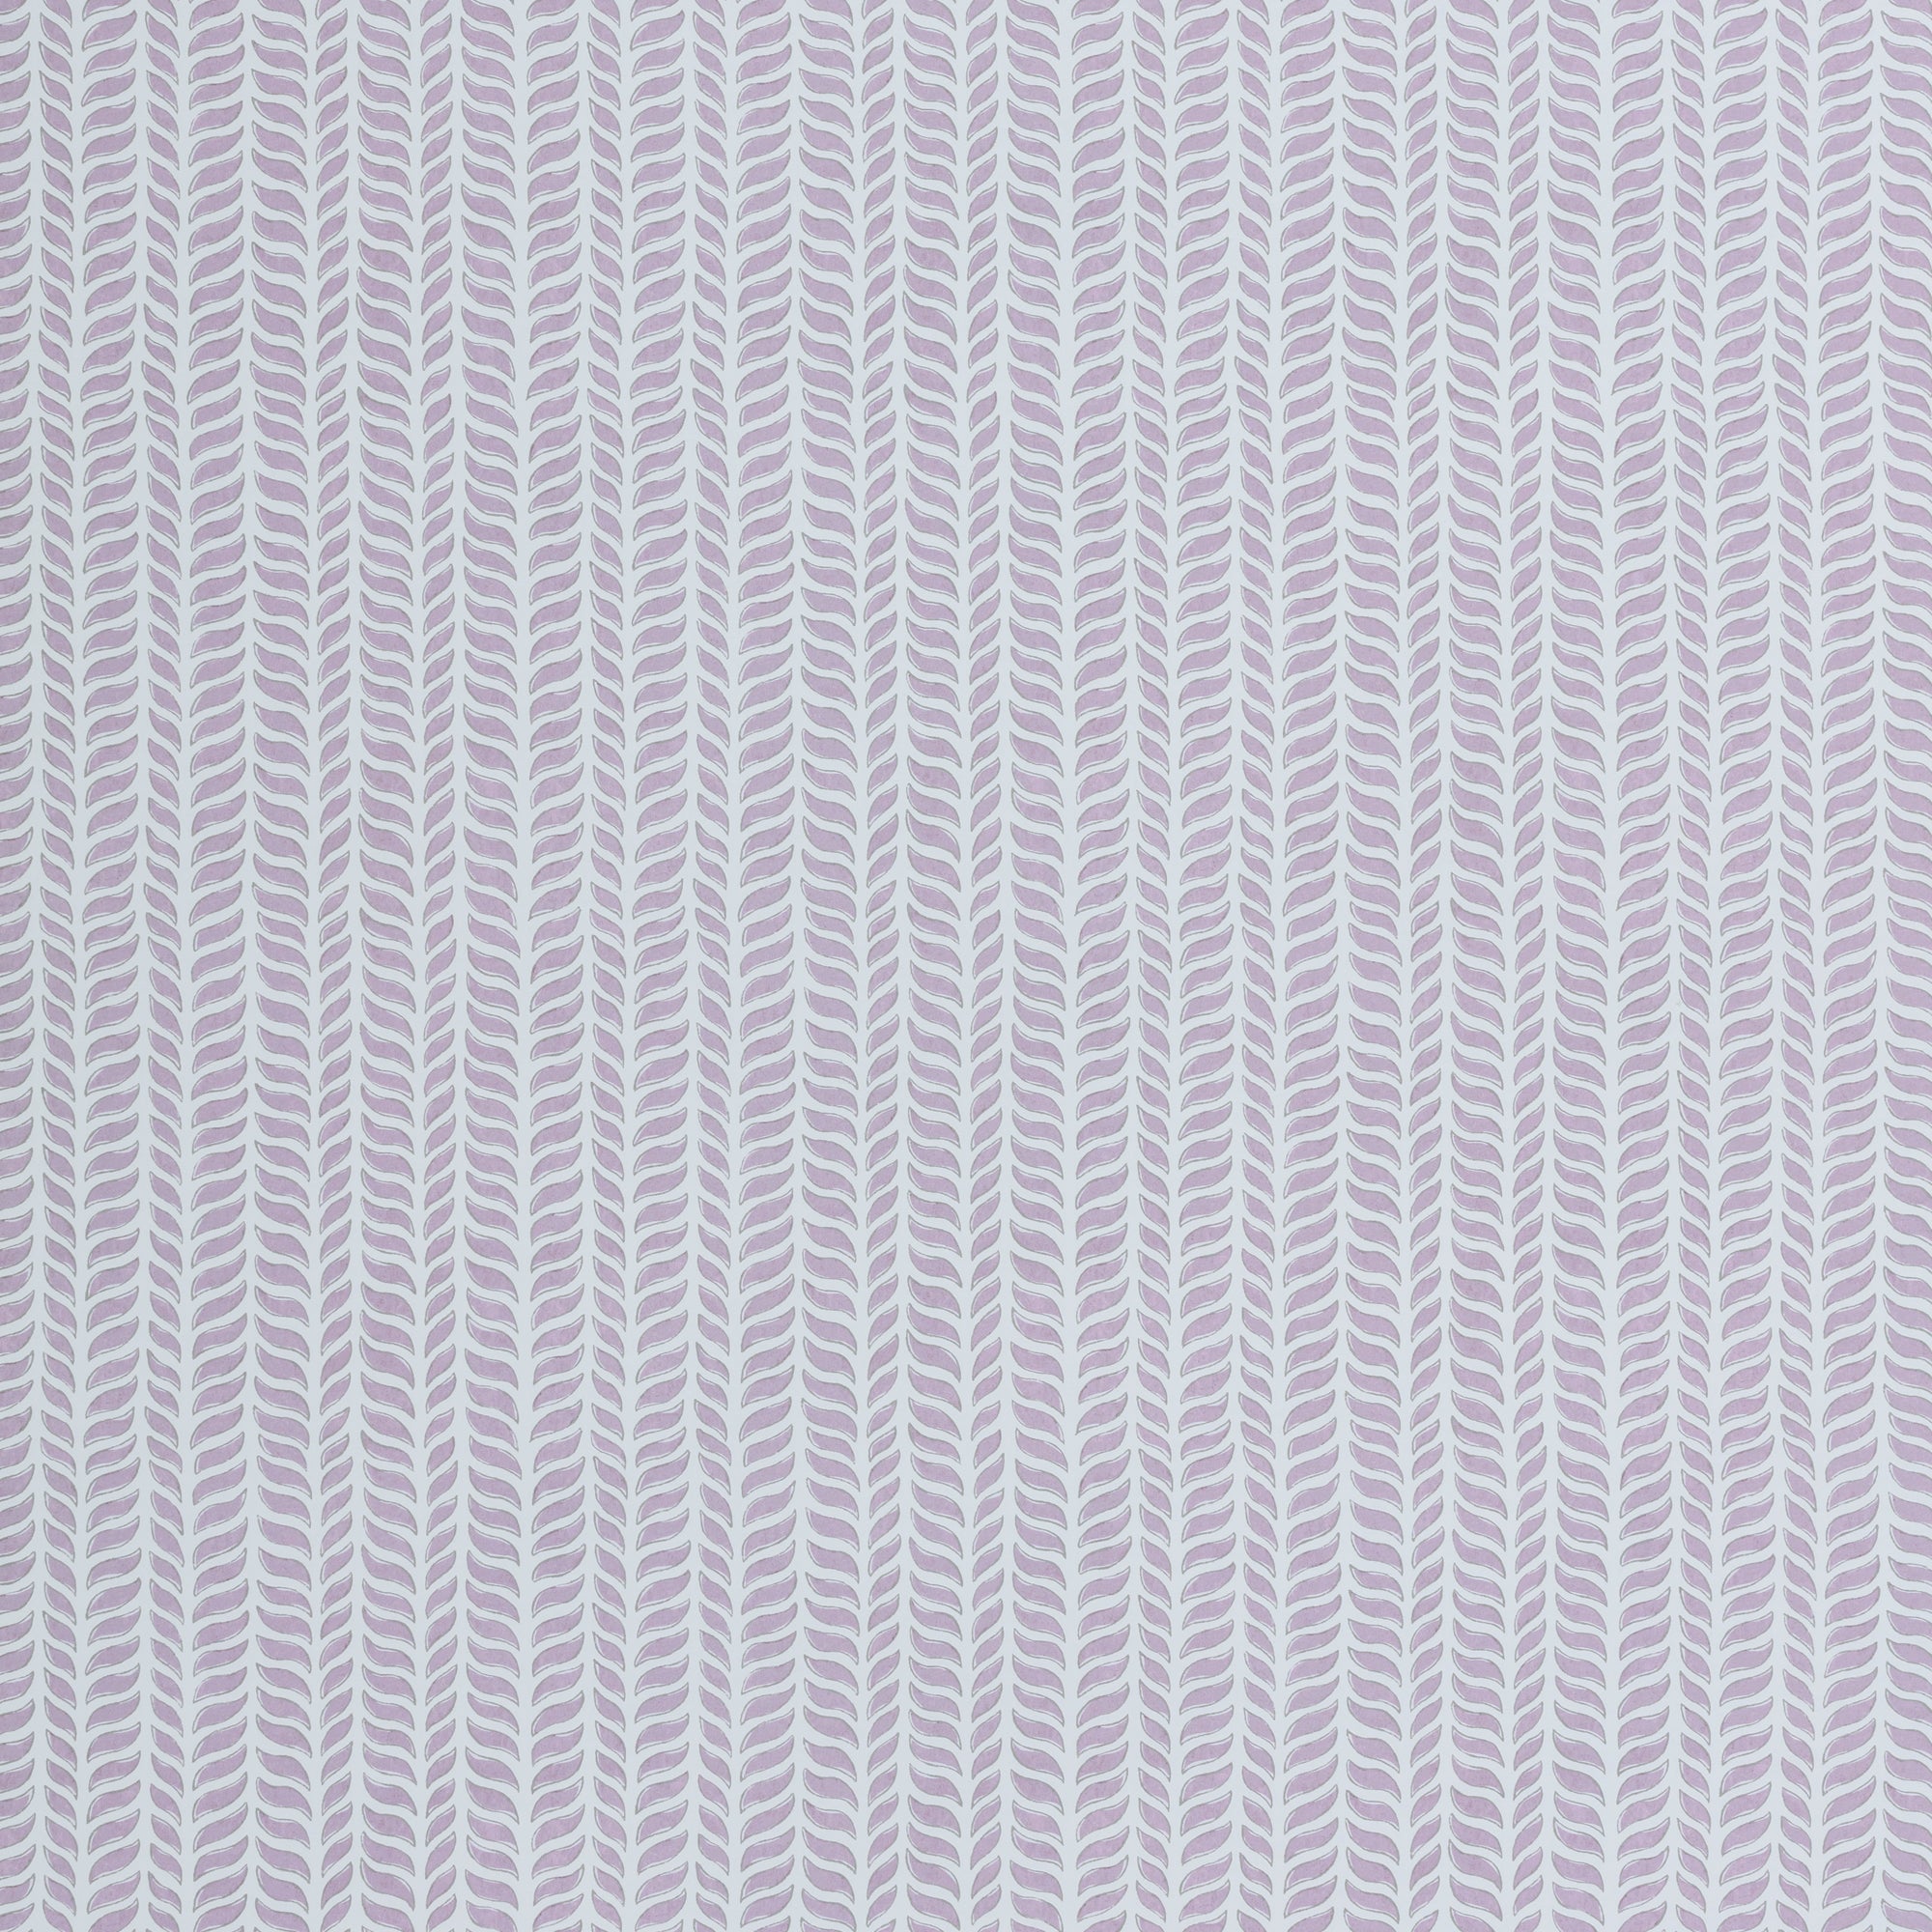 Wallpaper panel in a painterly herringbone print in purple on a light blue field.